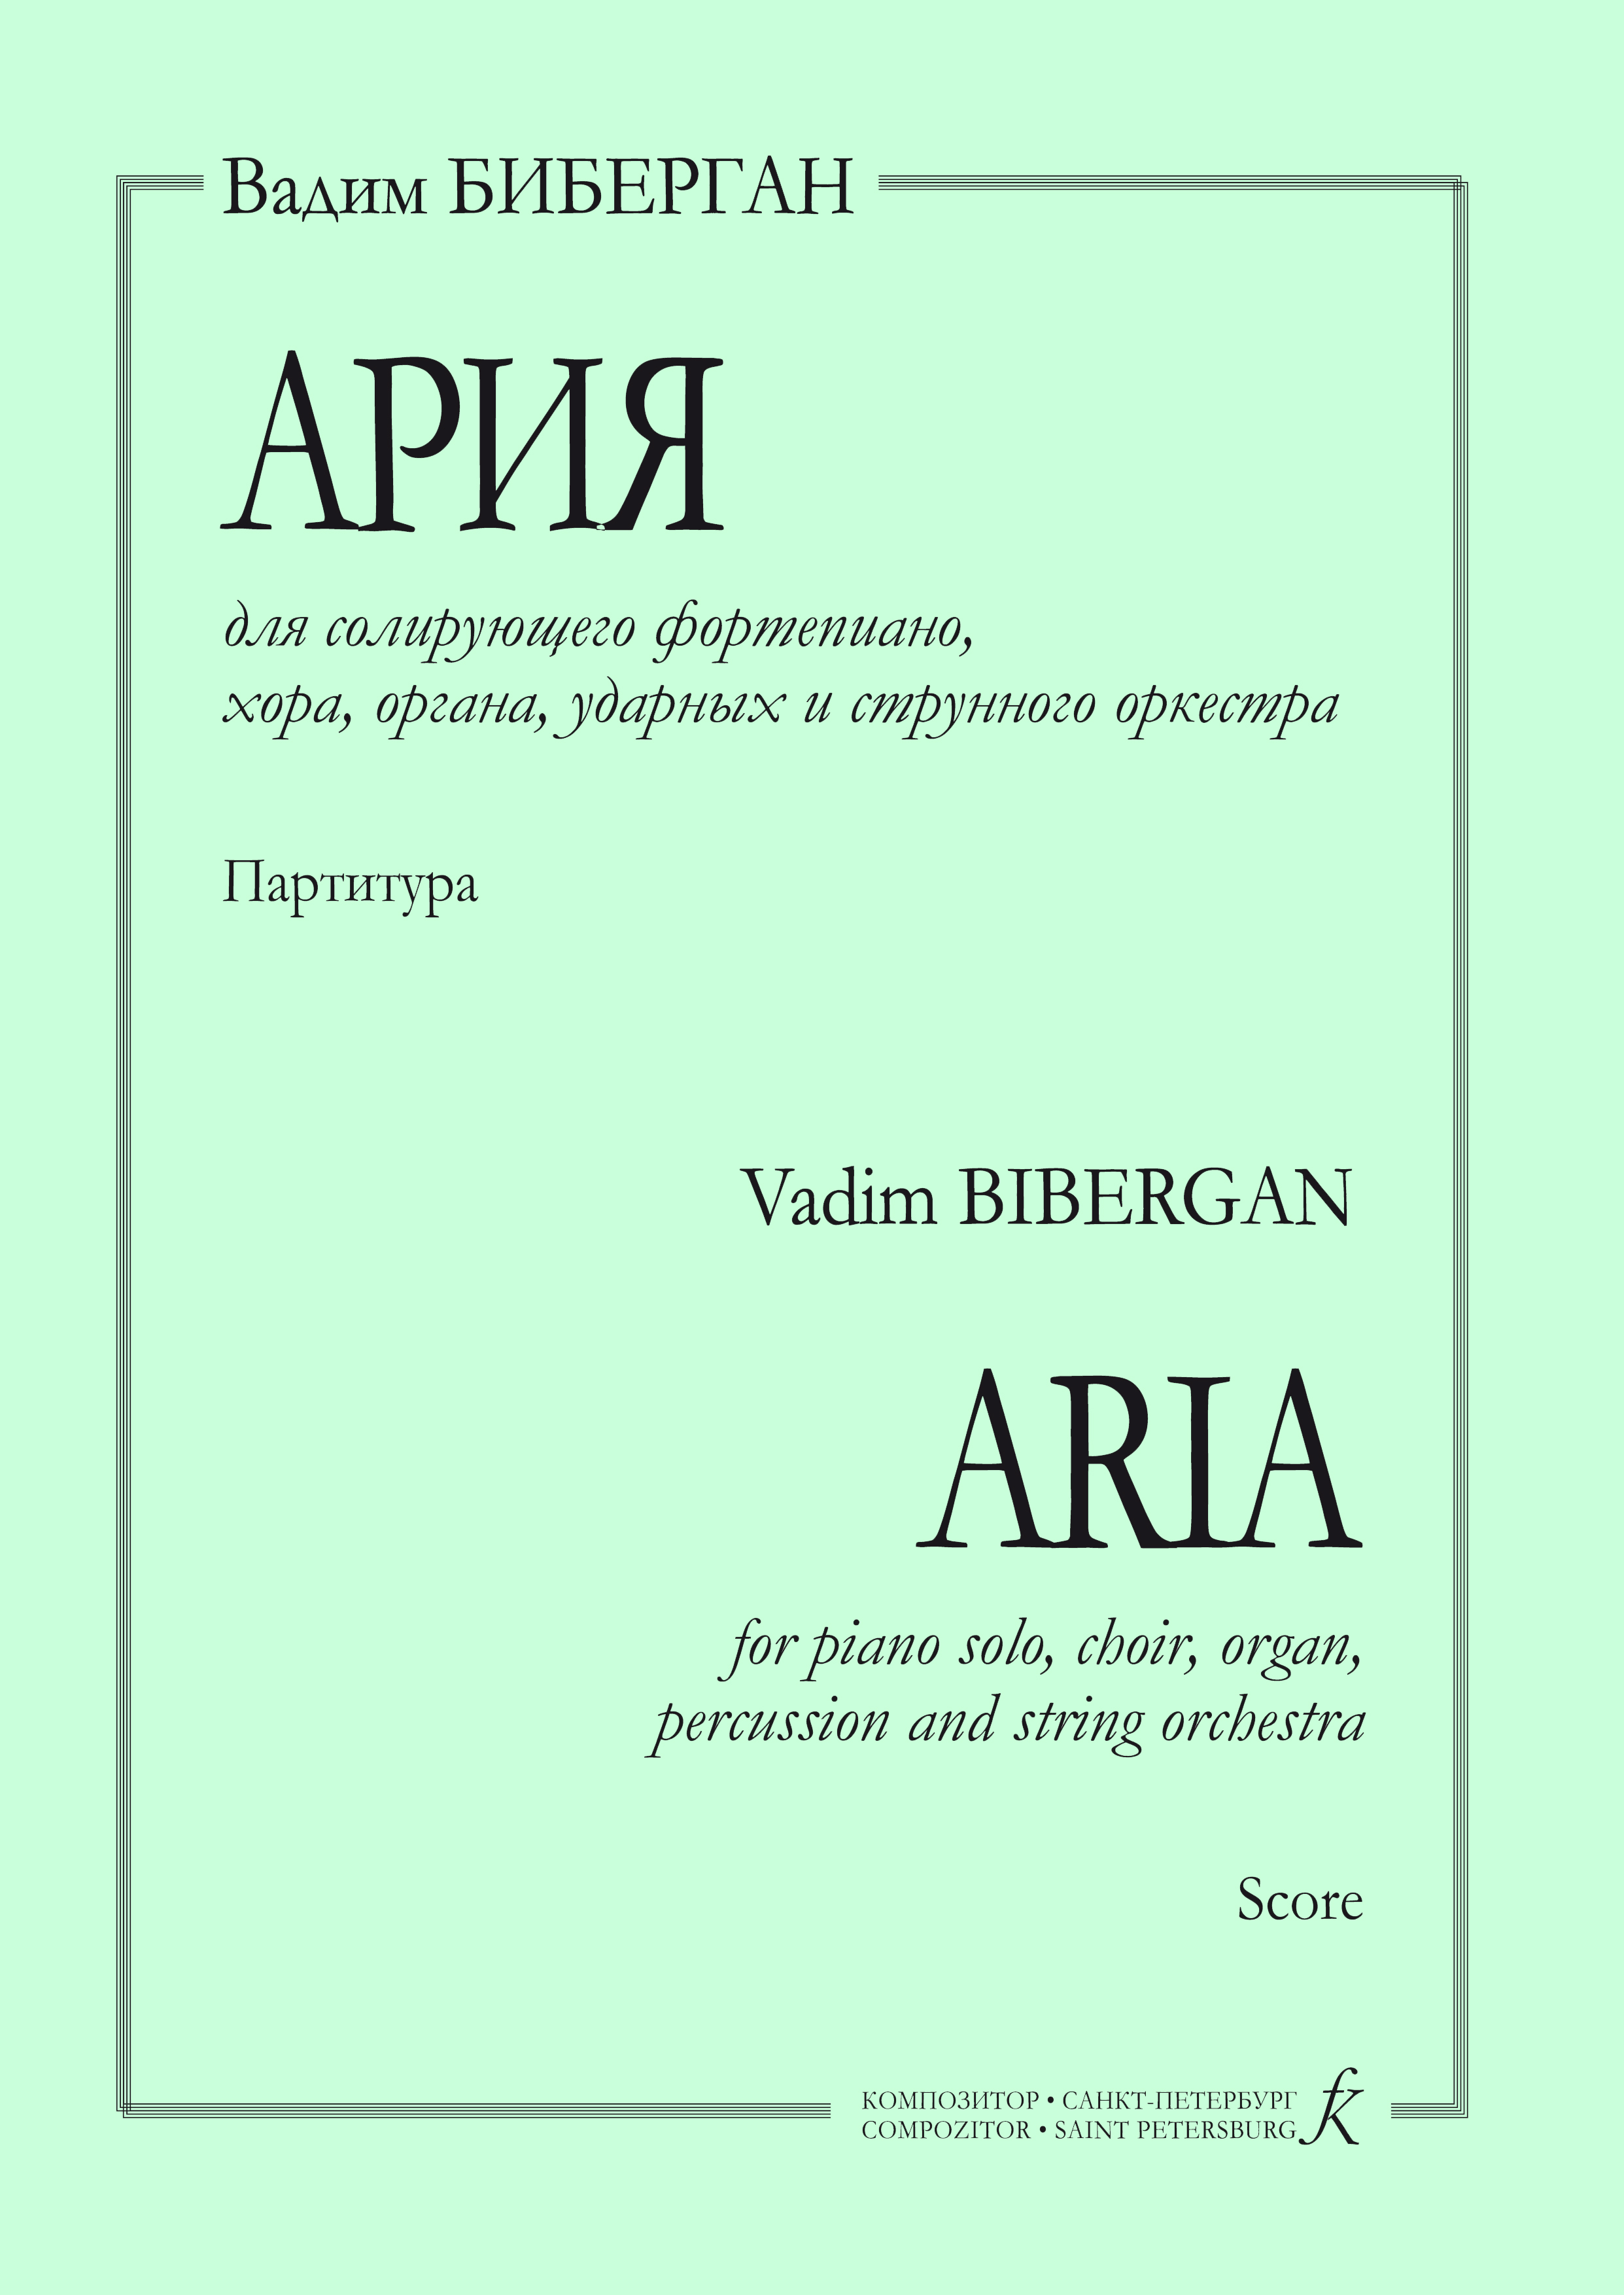 Биберган В. Ария для солирующего фп., хора, органа, ударных и струнного оркестра. Партитура